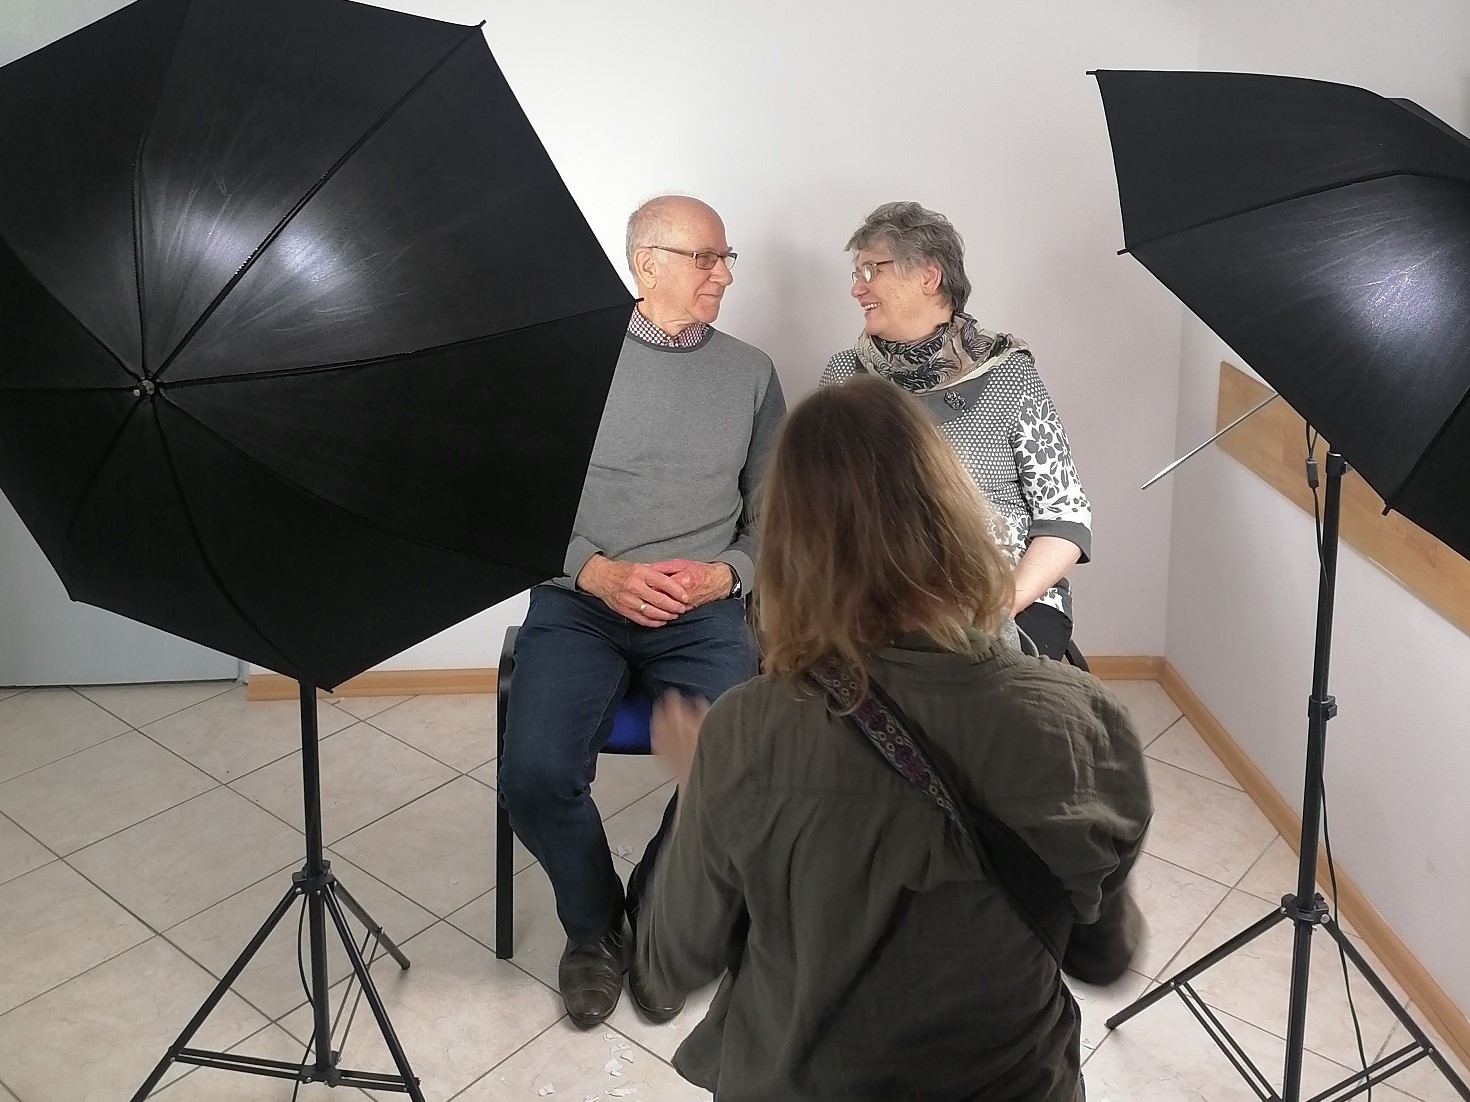 Klub Seniora Platyna - warsztaty fotograficzne dla seniorów - sesja w studio fotograficznym pod okiem instruktorki